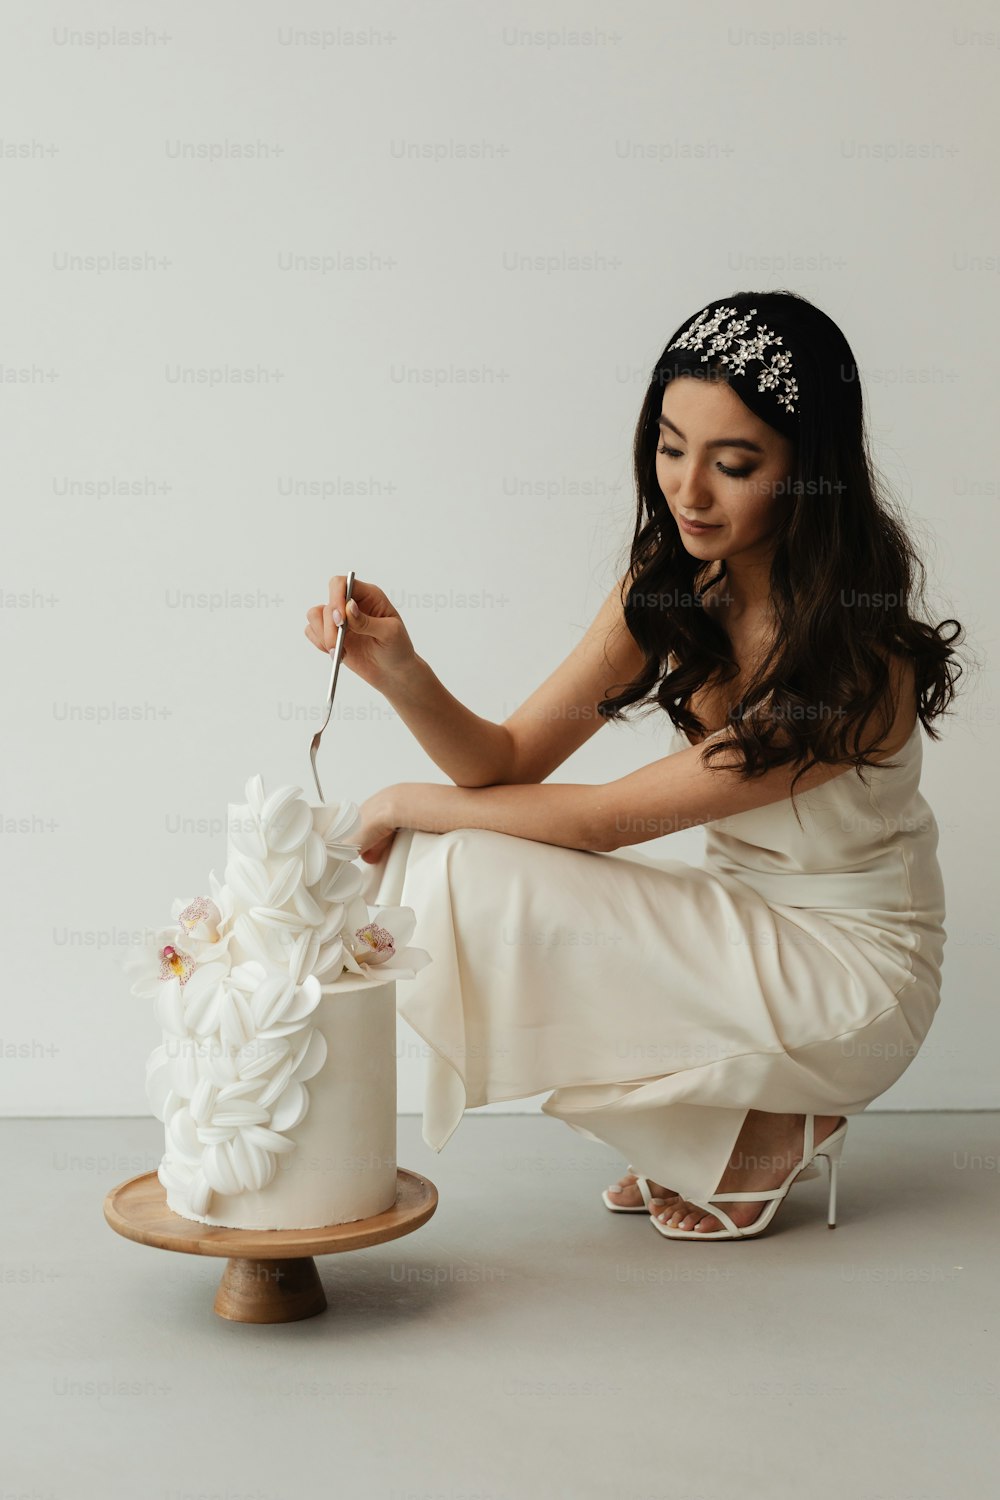 흰 드레스를 입고 웨딩 케이크를 자르는 여자